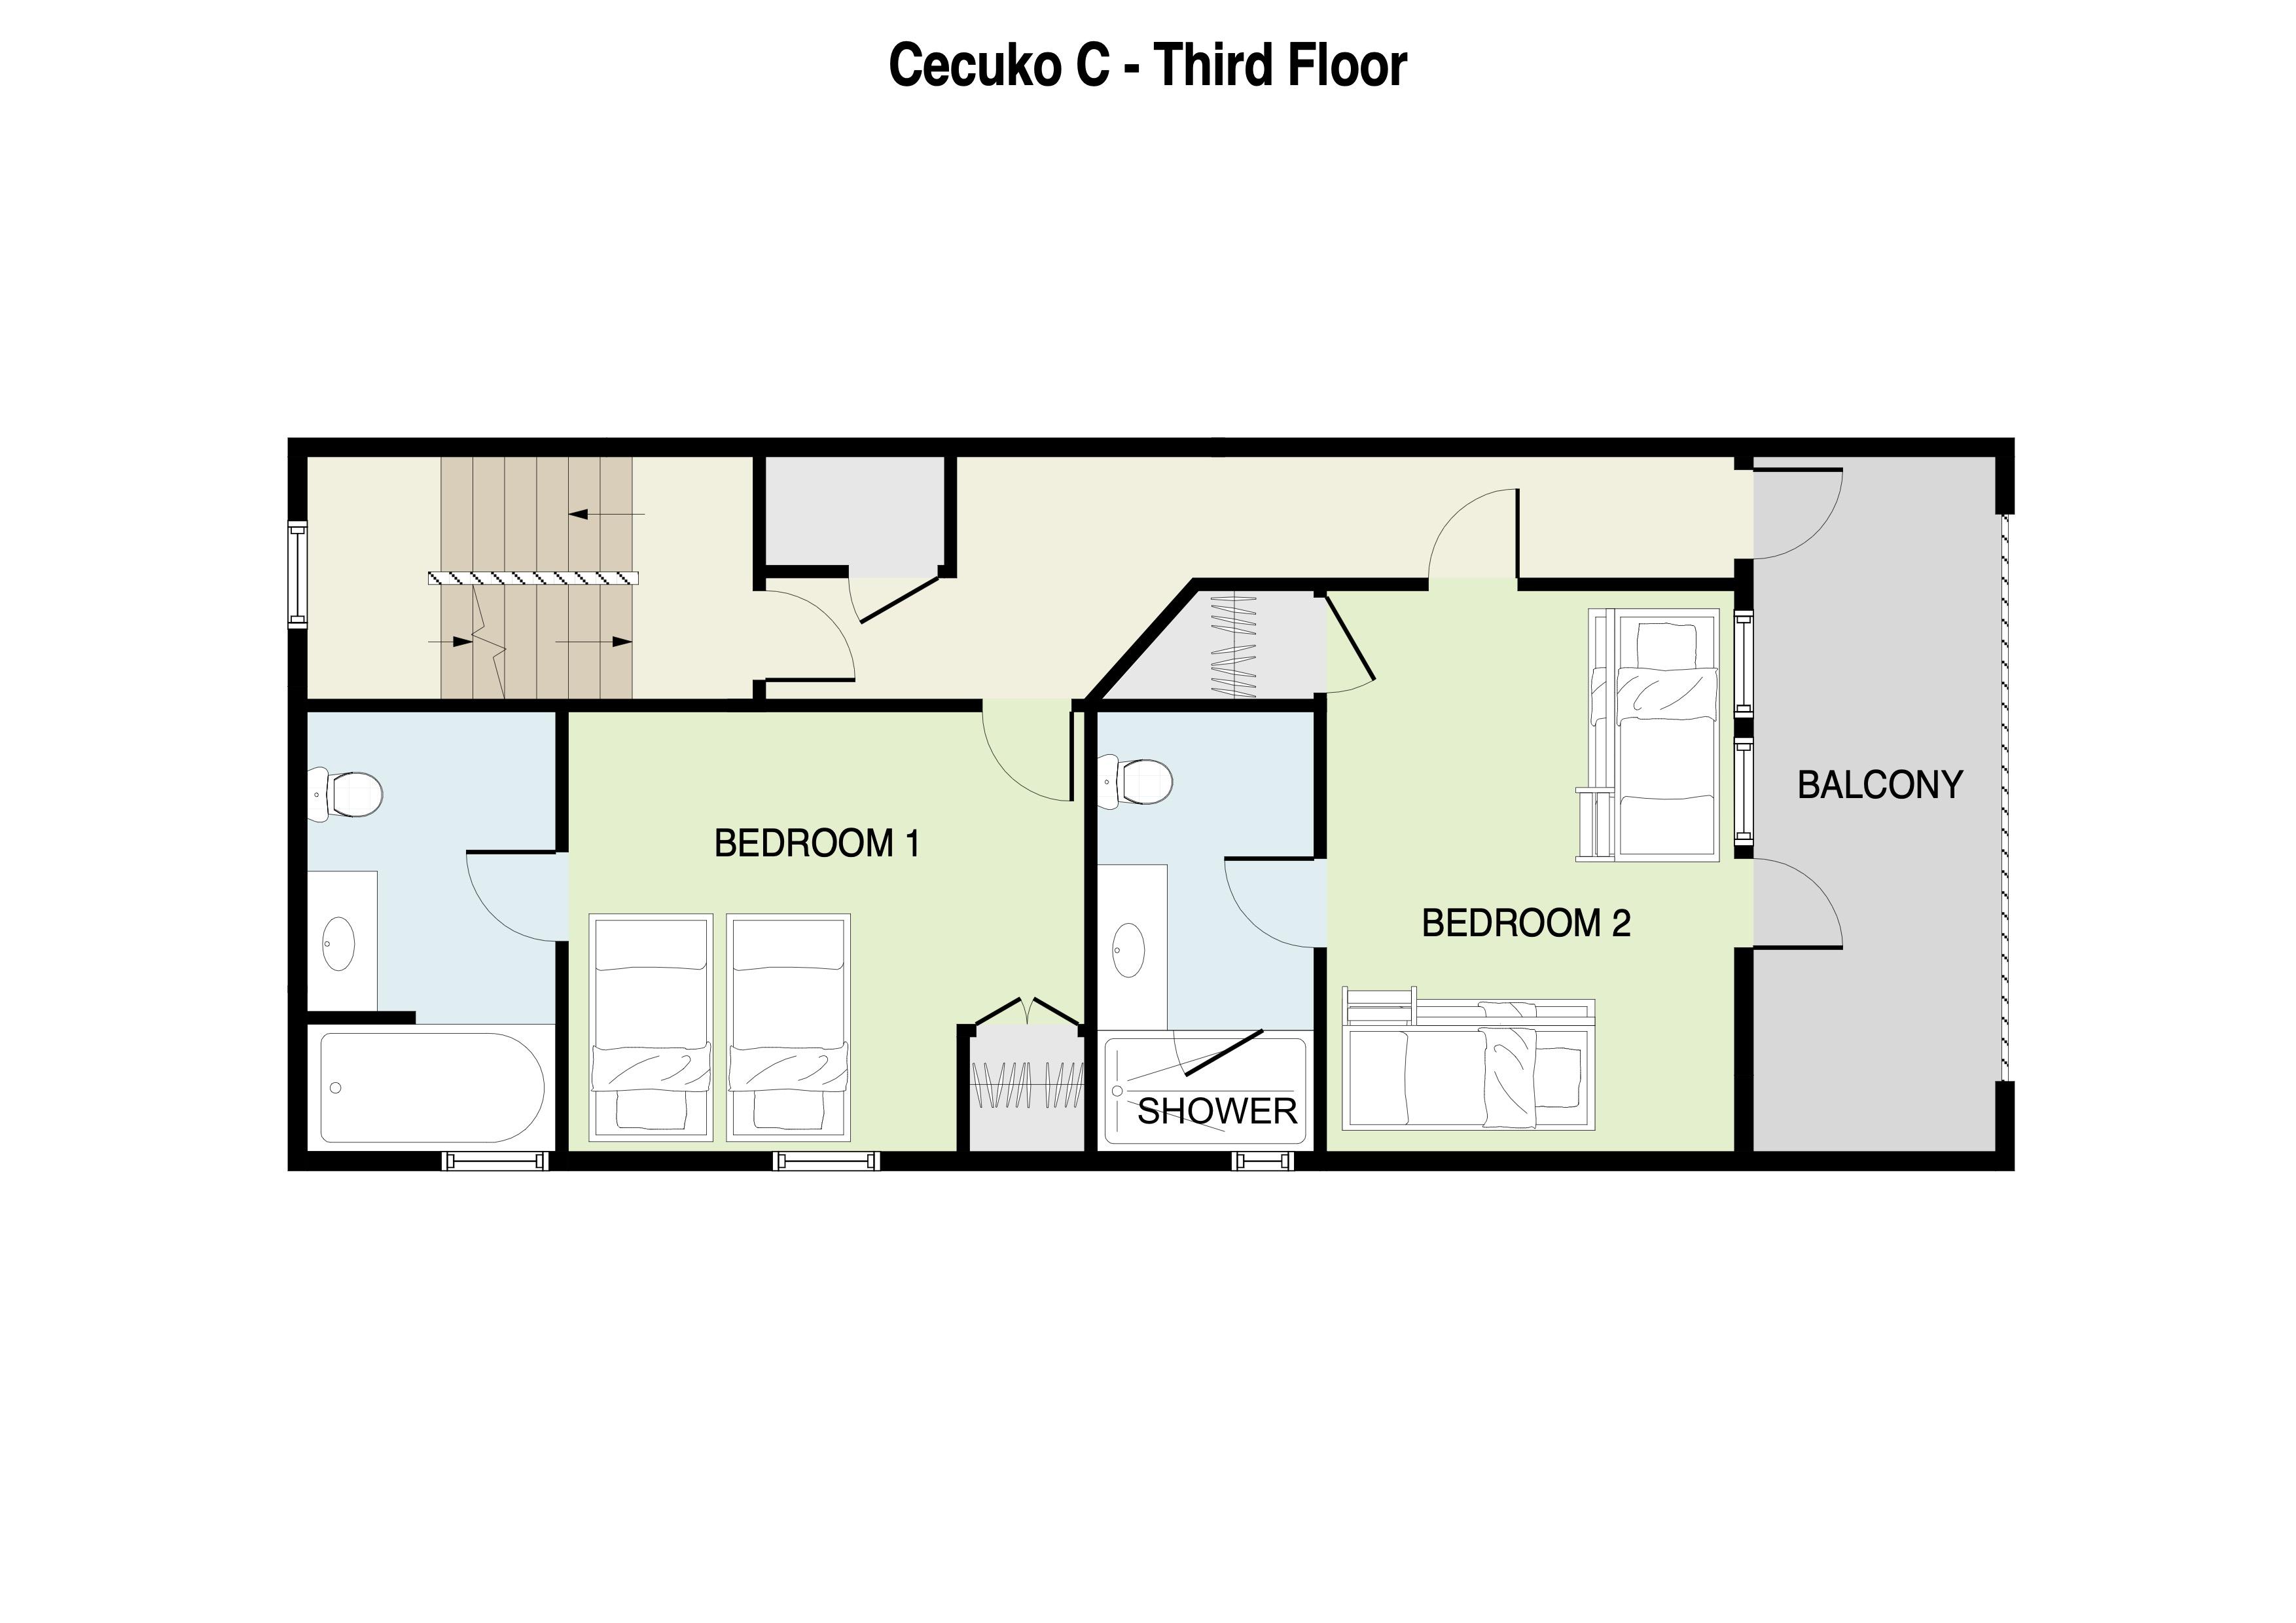 Cecuko C 3rd Floor Plans